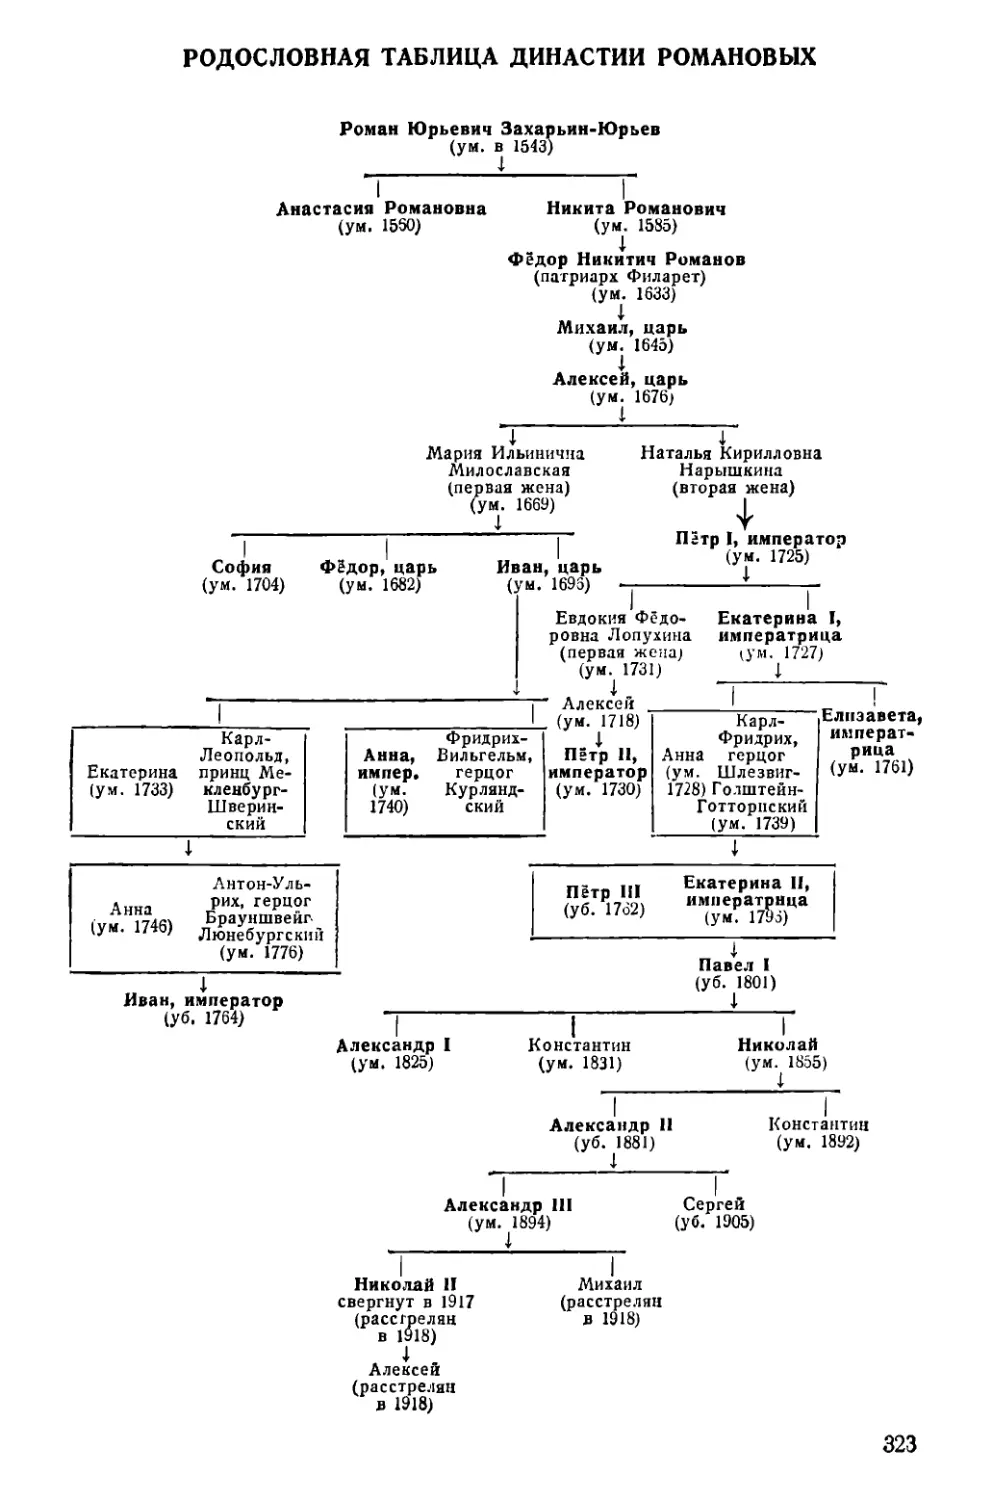 Родословная таблица династии Романовых